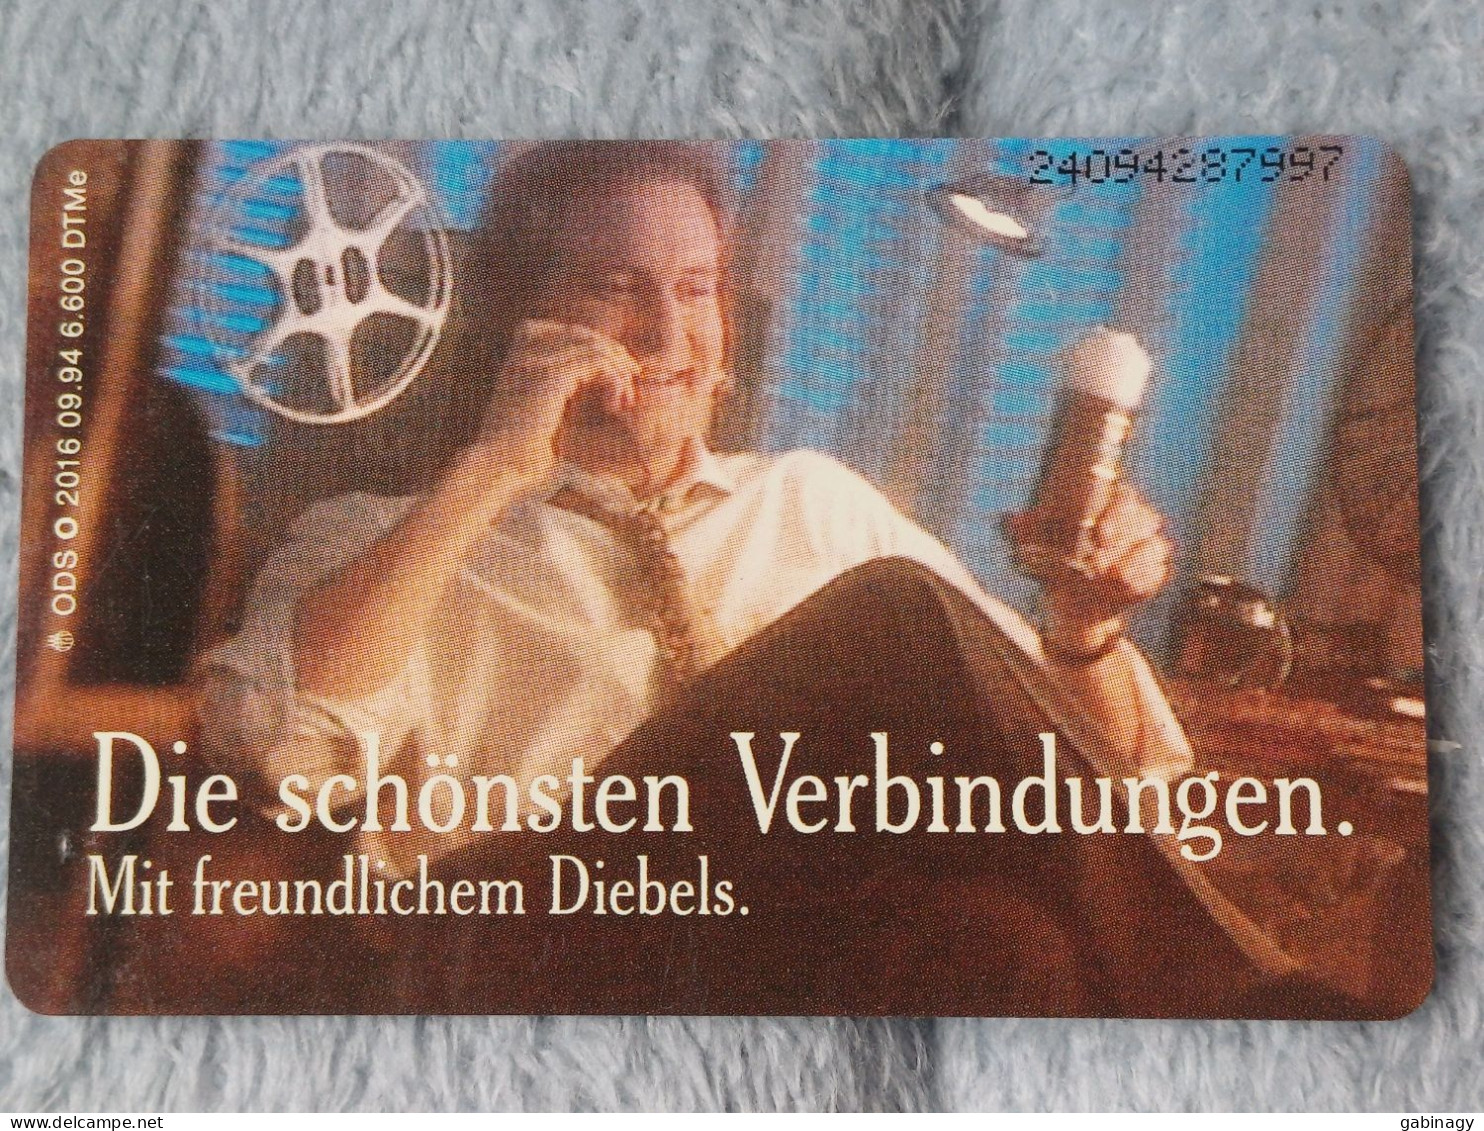 GERMANY-1090 - O 2016 - Diebels Alt Bier 2 - Die Schönsten Verbindungen - BEER - 6.600ex. - O-Series : Series Clientes Excluidos Servicio De Colección